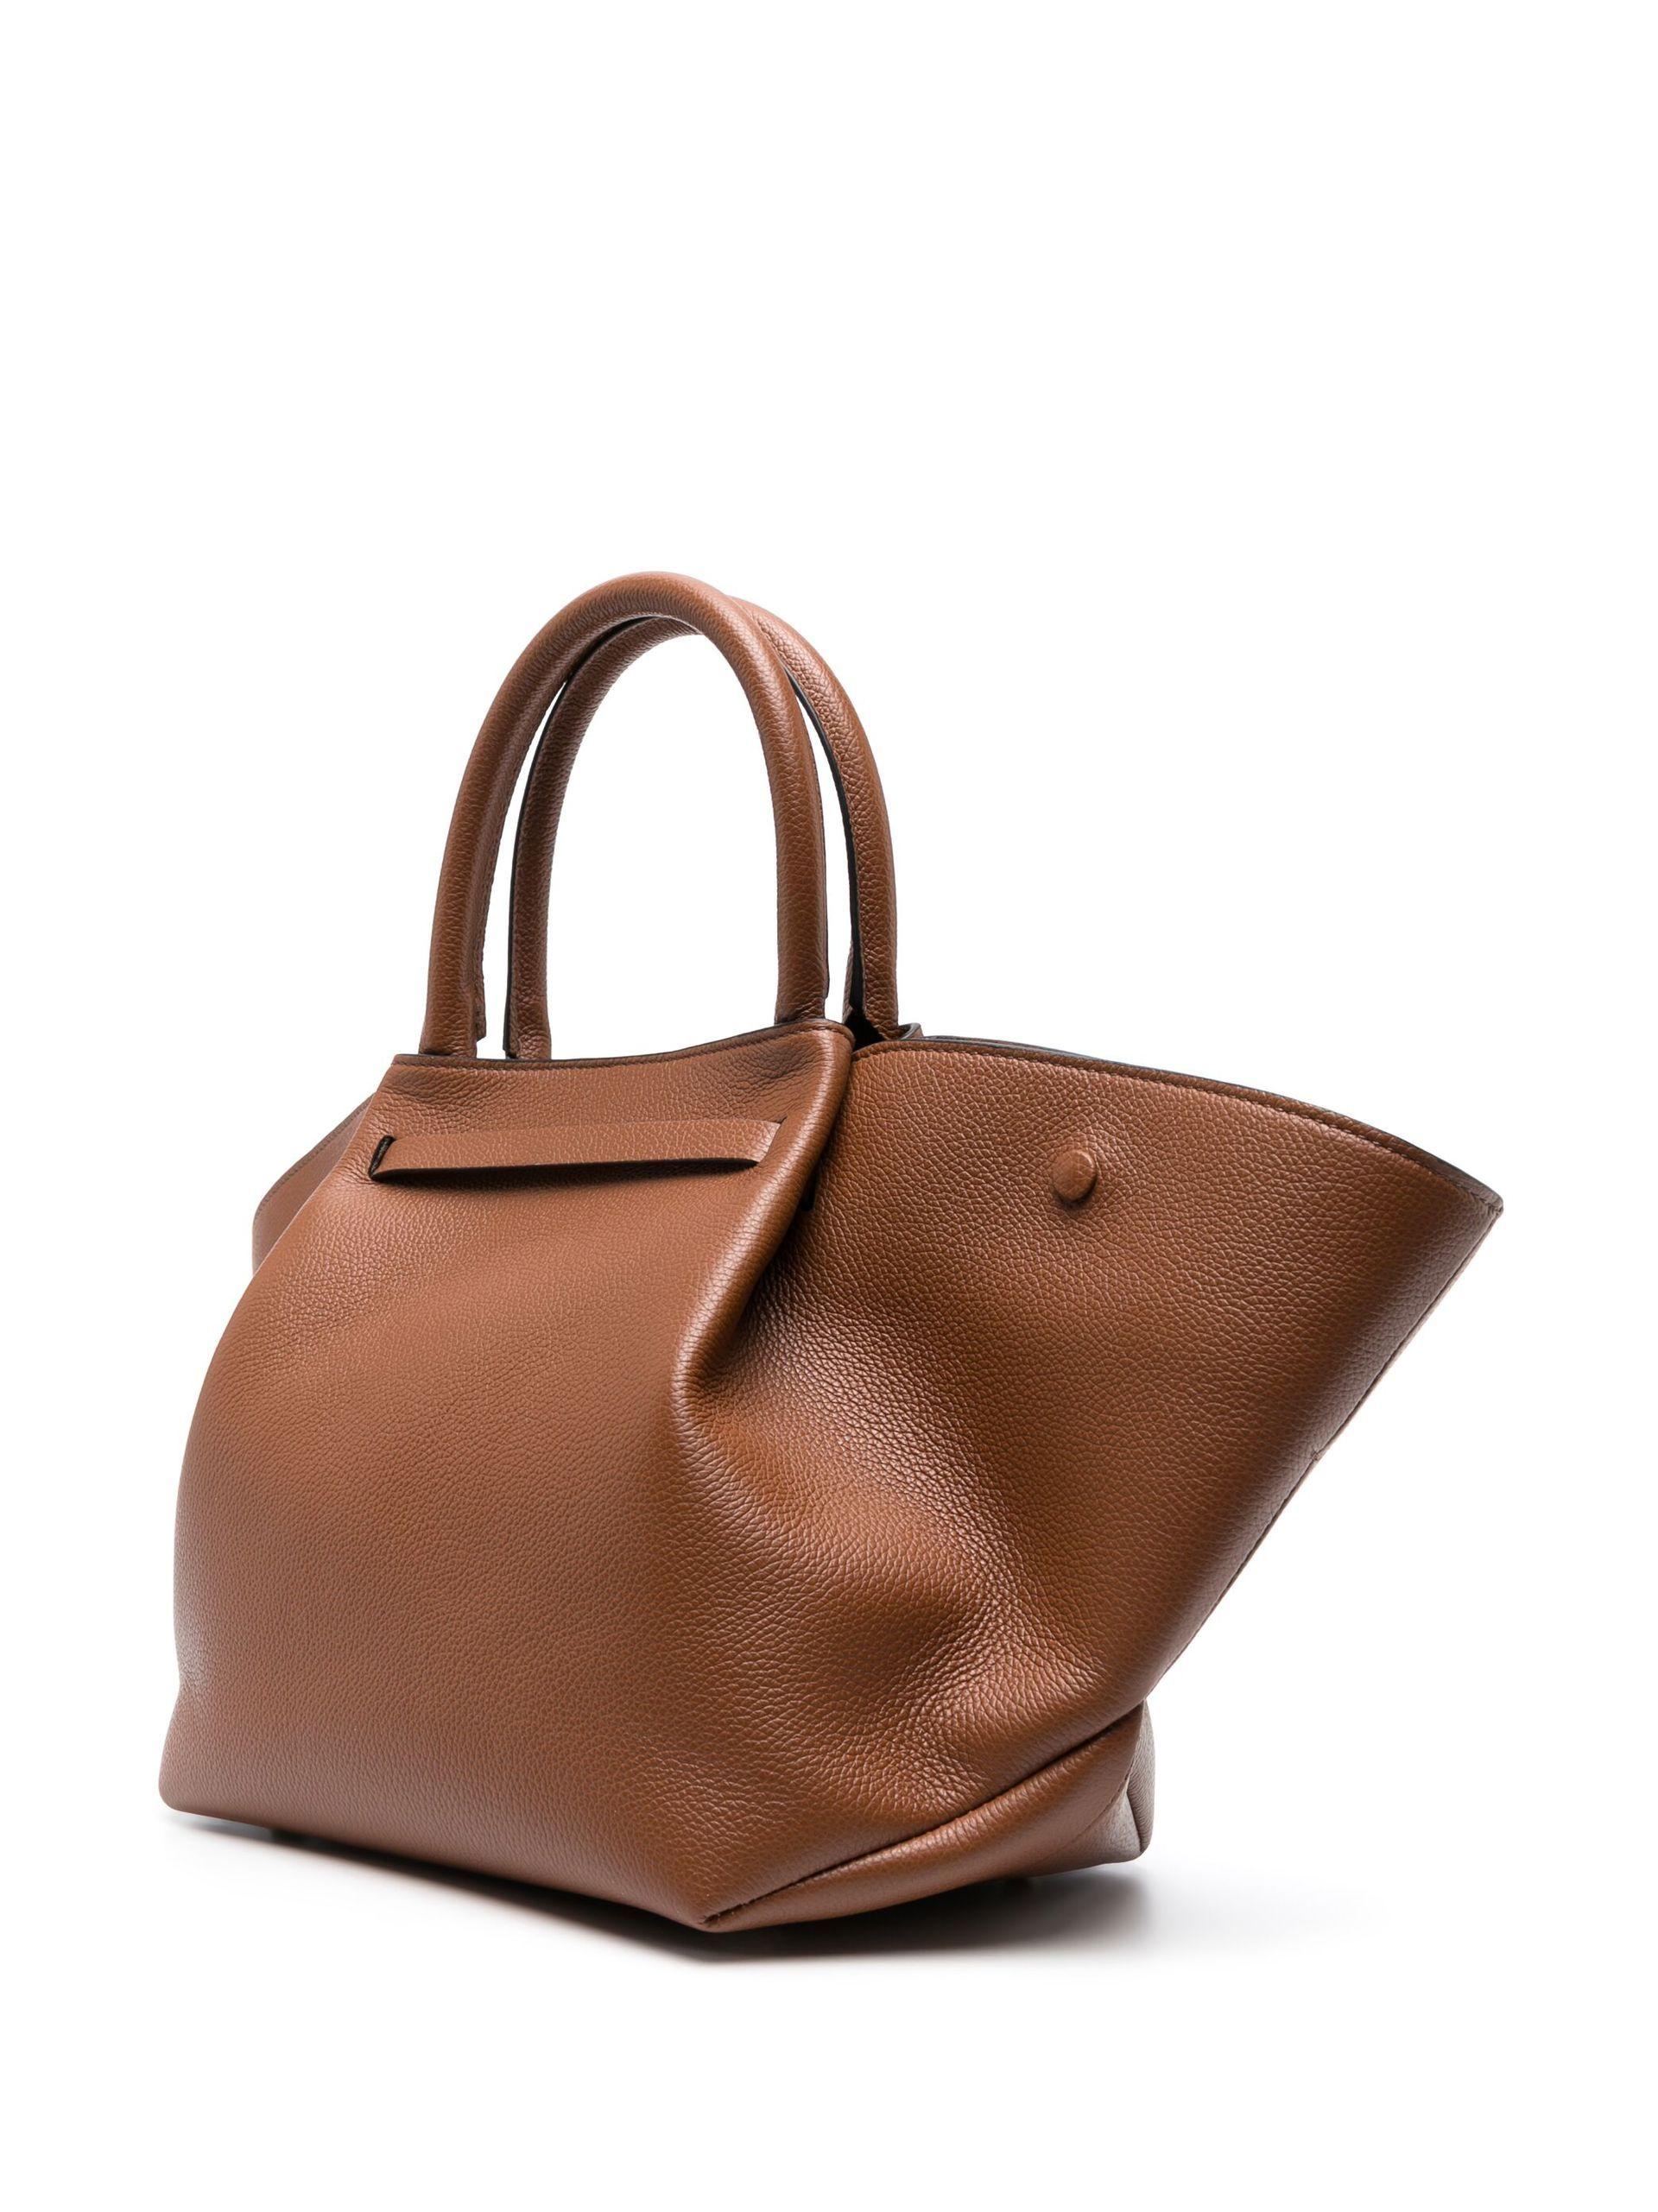 midi leather bag